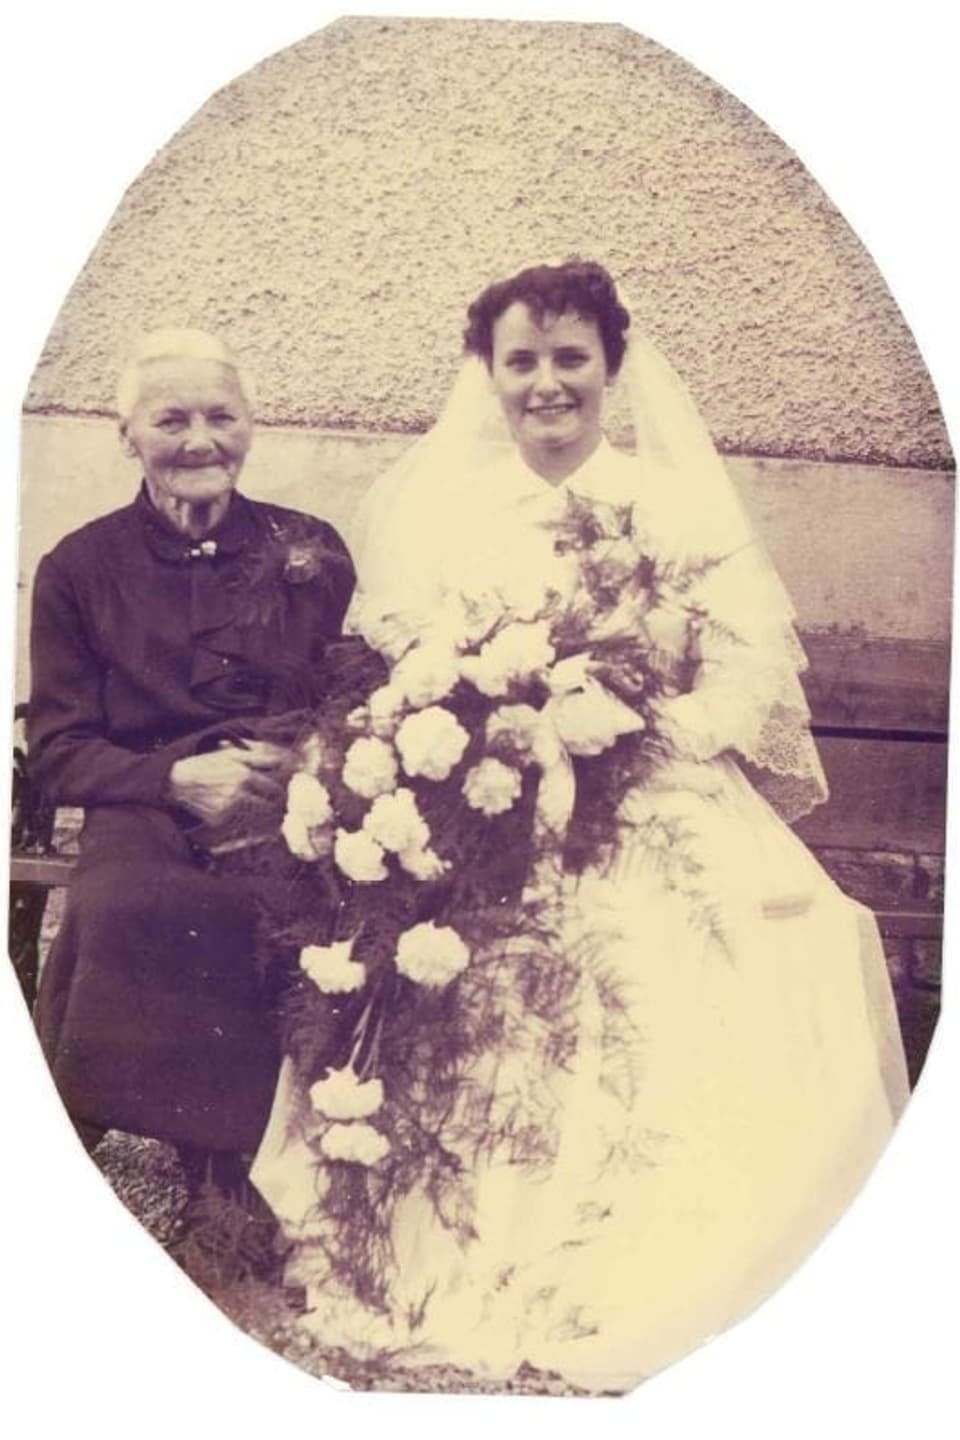 Hochzeitsfoto mit der Grossmutter (95 Jahre) im Jahr 1953